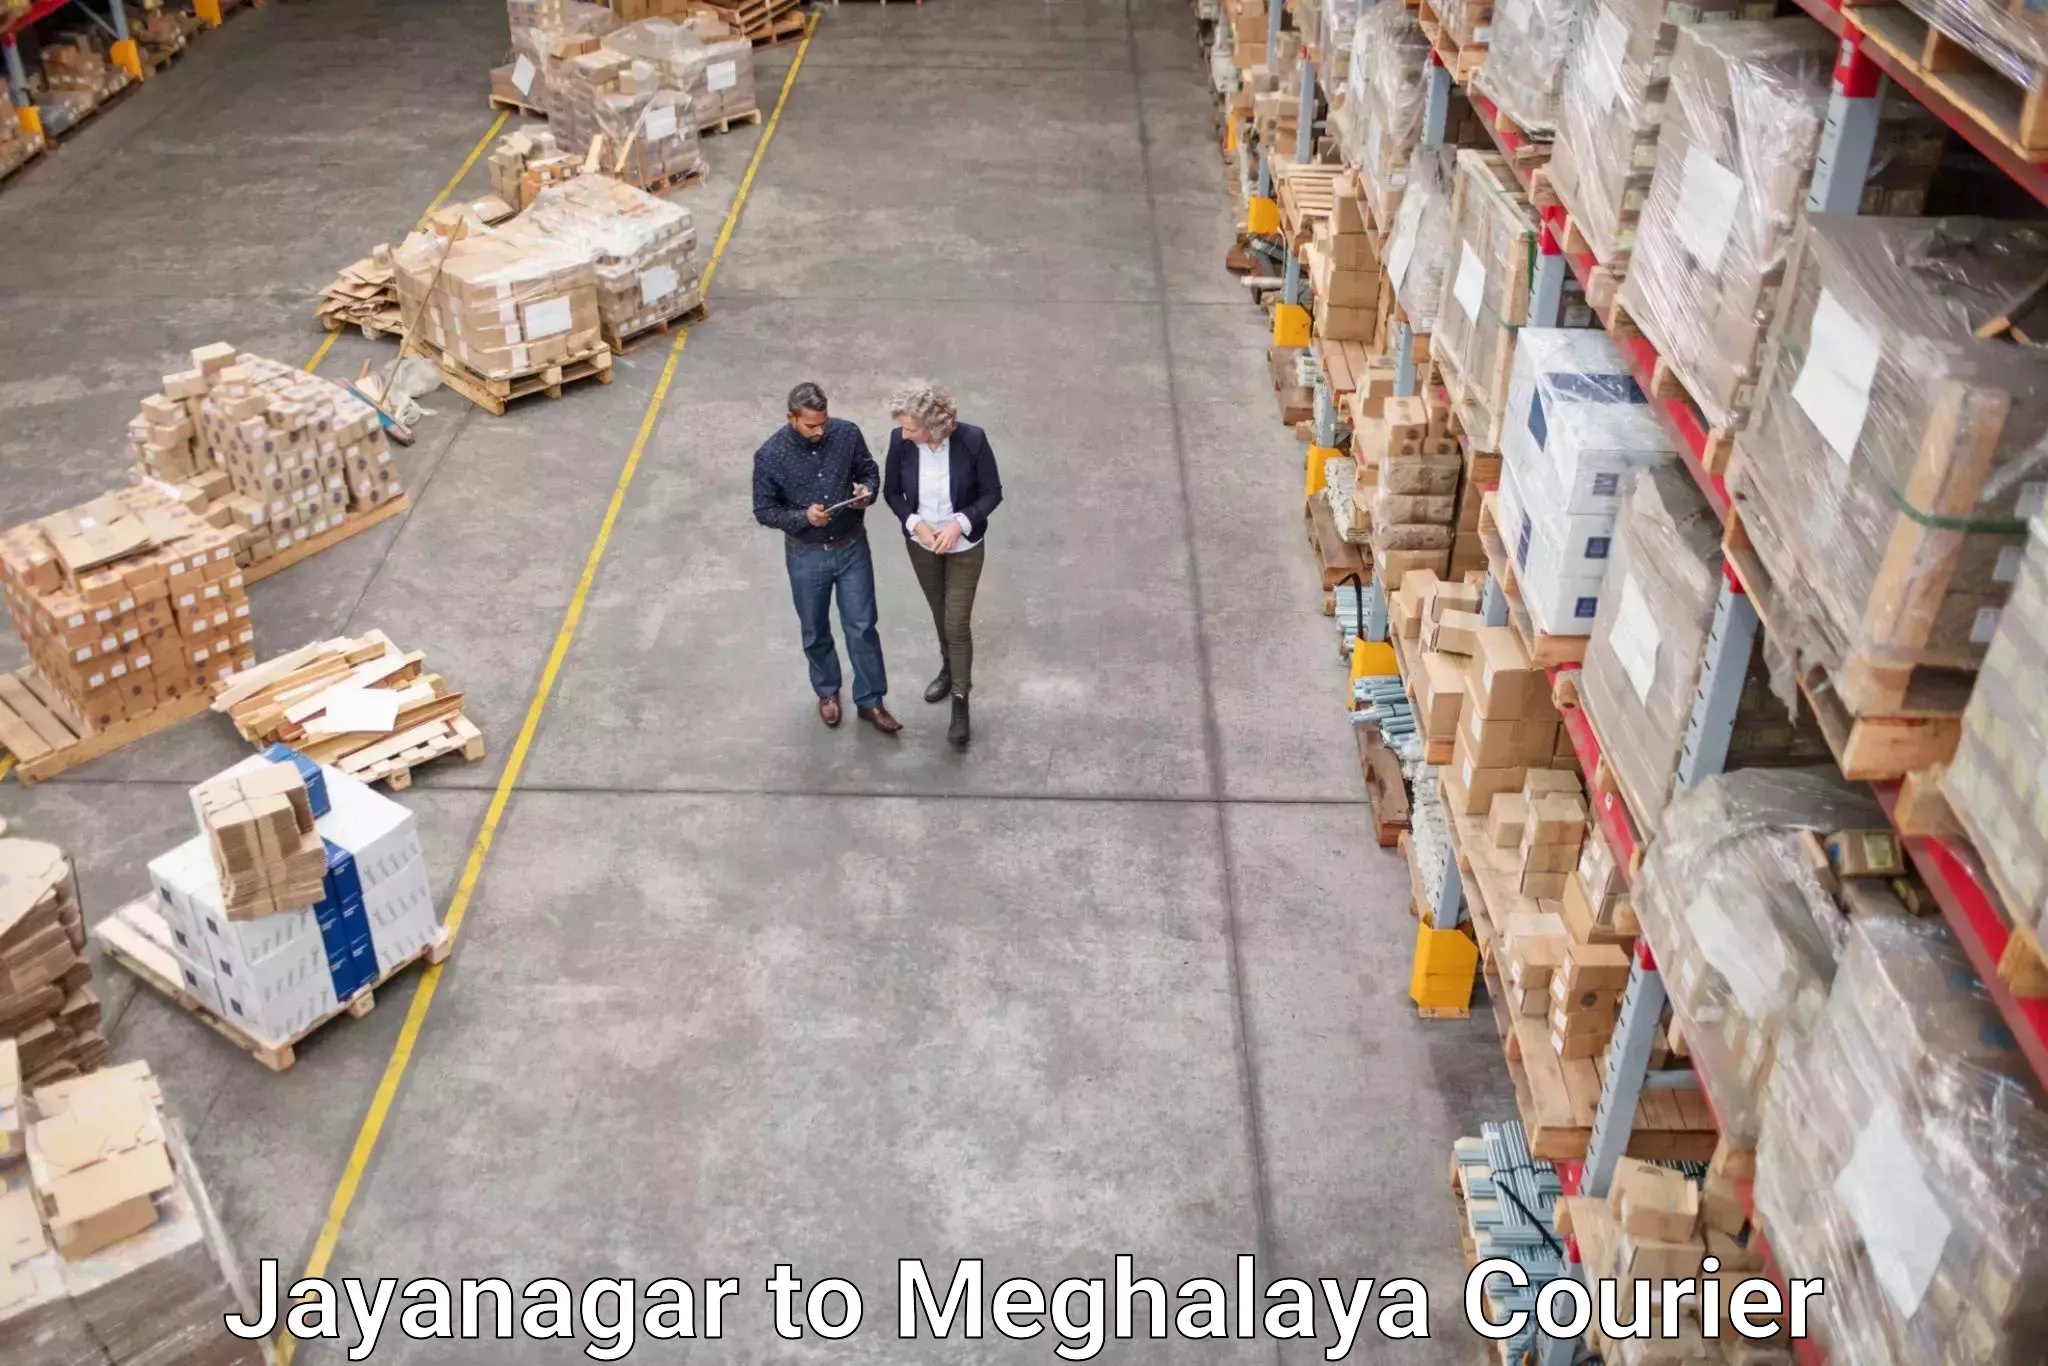 Ground shipping Jayanagar to Meghalaya